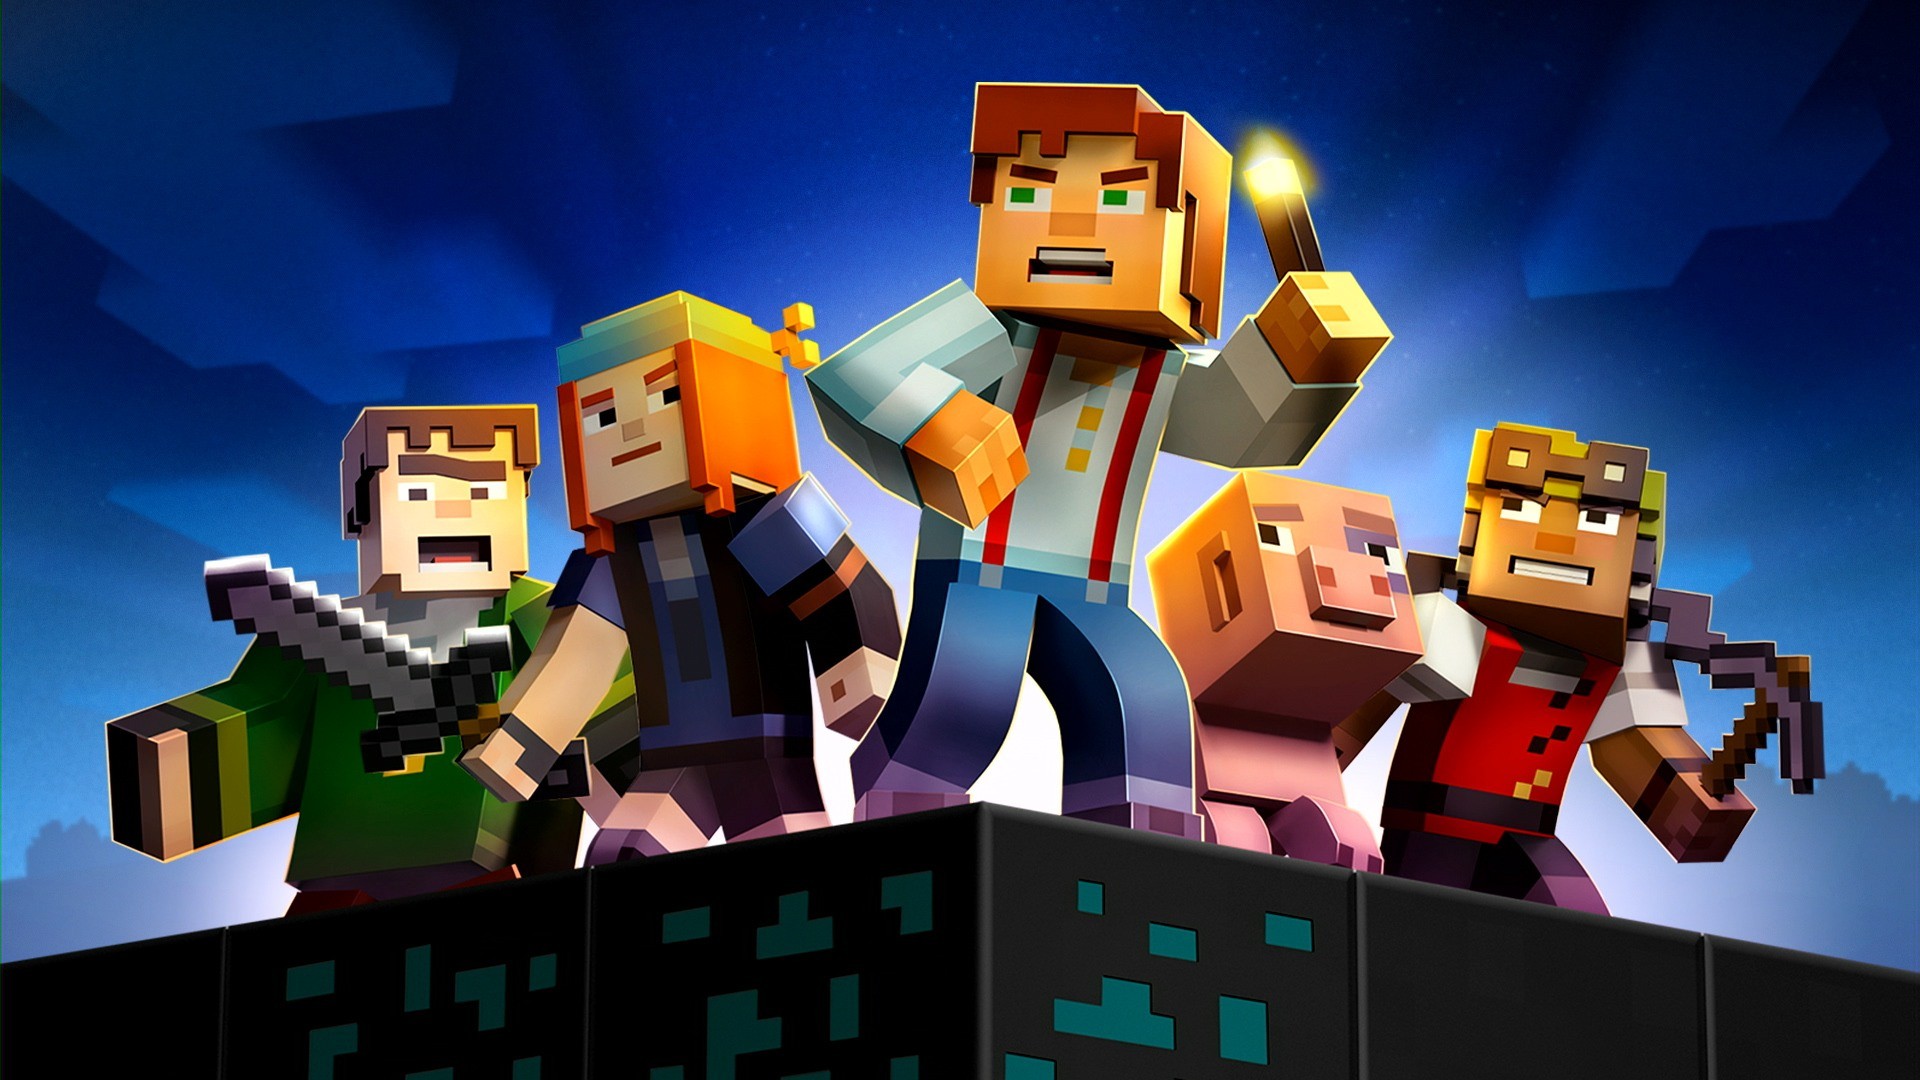 Minecraft: Story Mode finalmente chega à Netflix após diversos imprevistos  